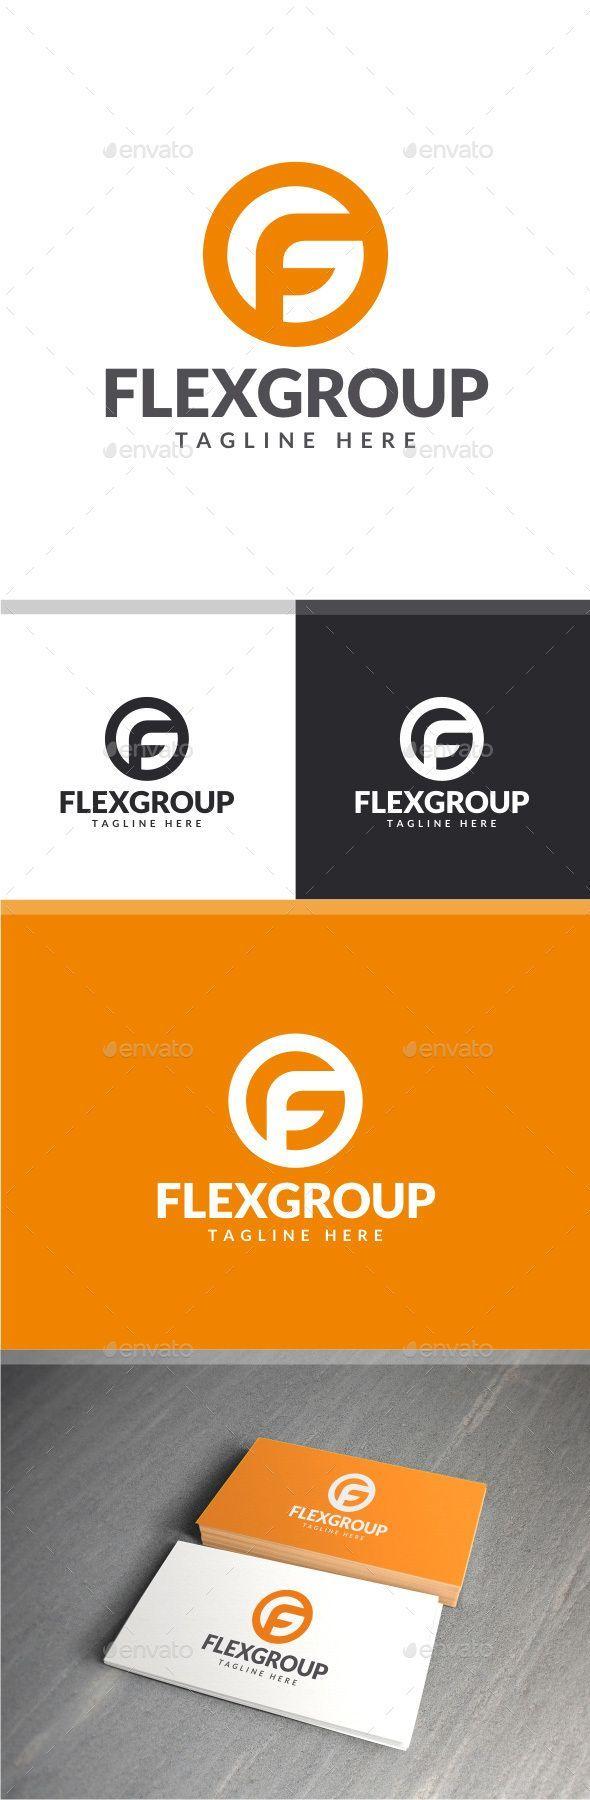 FG Logo - Pin by LogoLoad on Letter Logos | Logo design app, G logo design ...